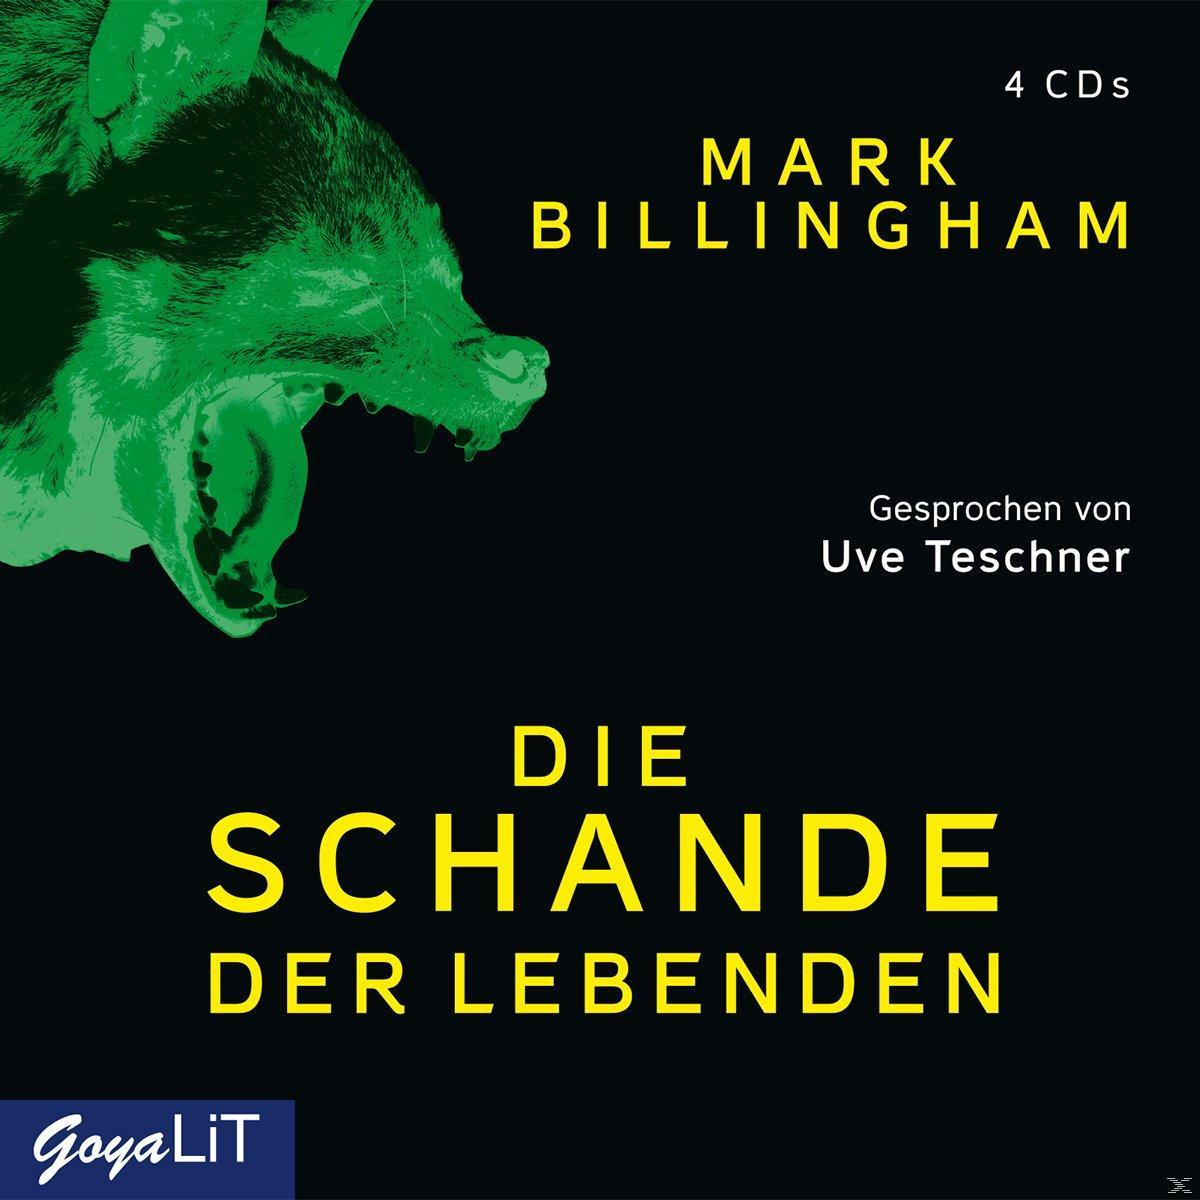 Uve Teschner - Lebenden - der Die (CD) Schande